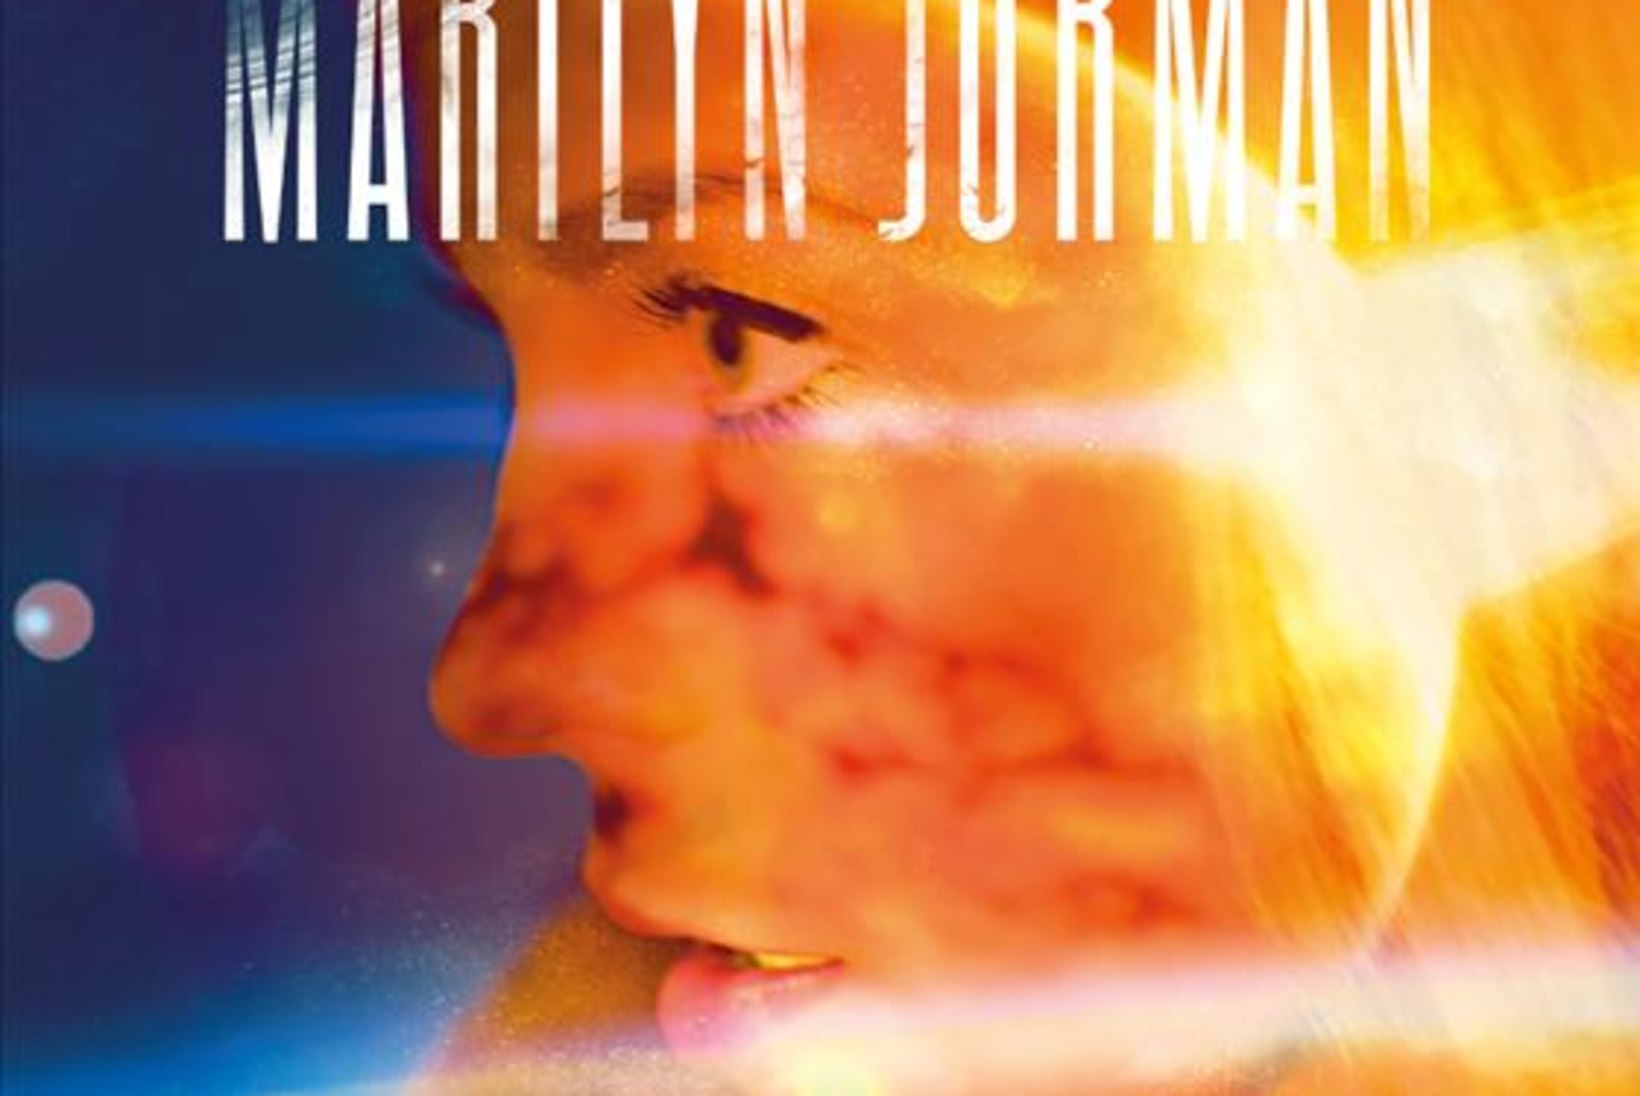 Marilyn Jurmanil ilmus debüütalbum